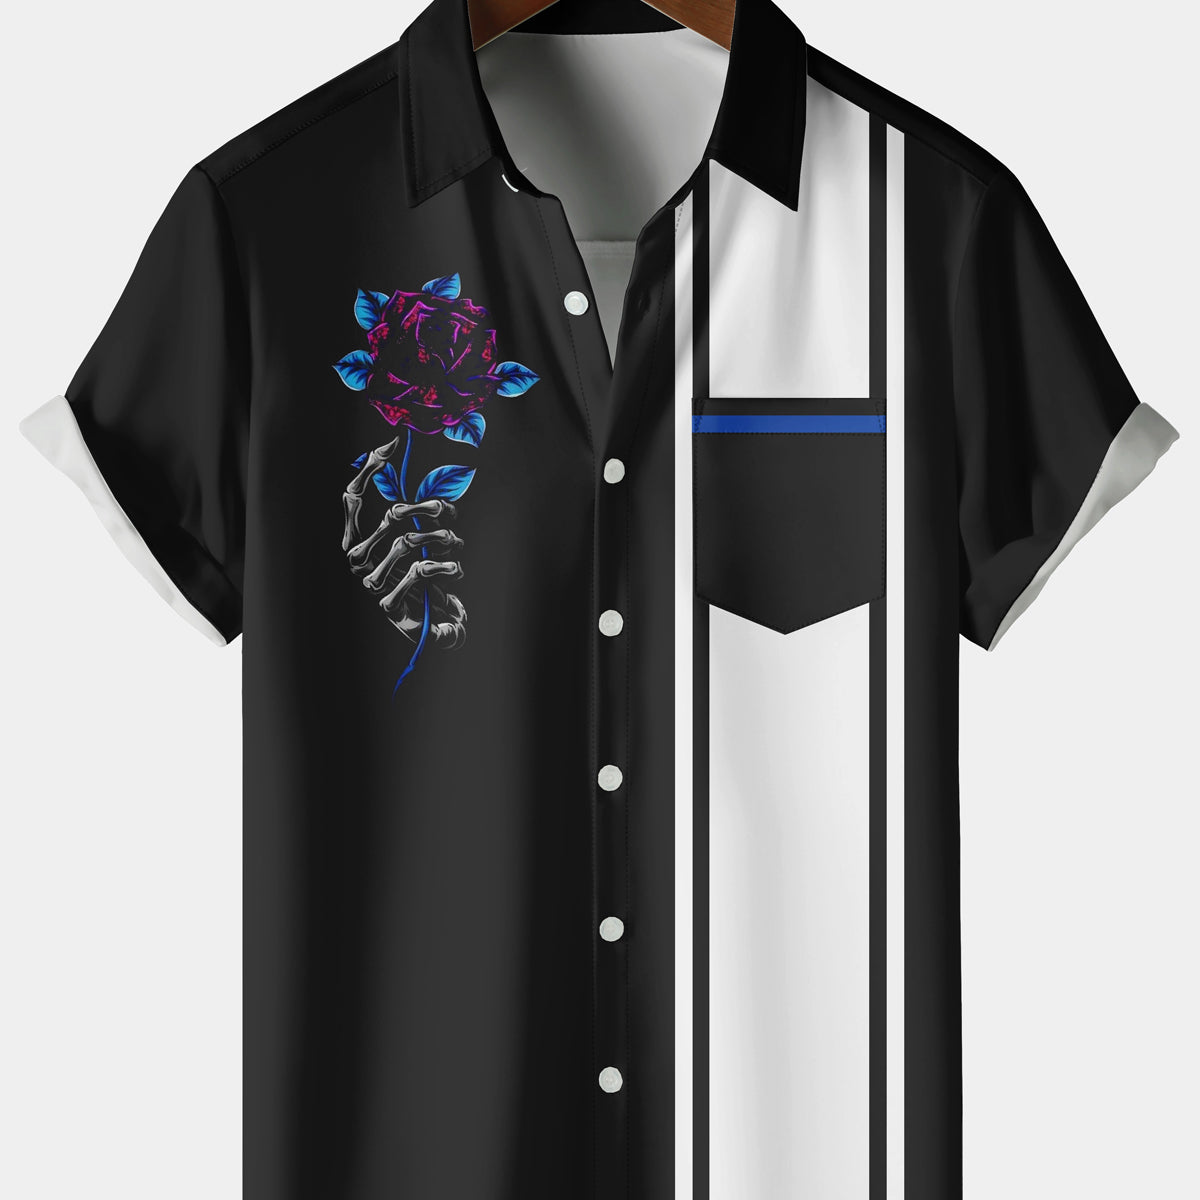 Men's Casual Skull Rose Stripe Chest Pocket Black Short Sleeve Shirt